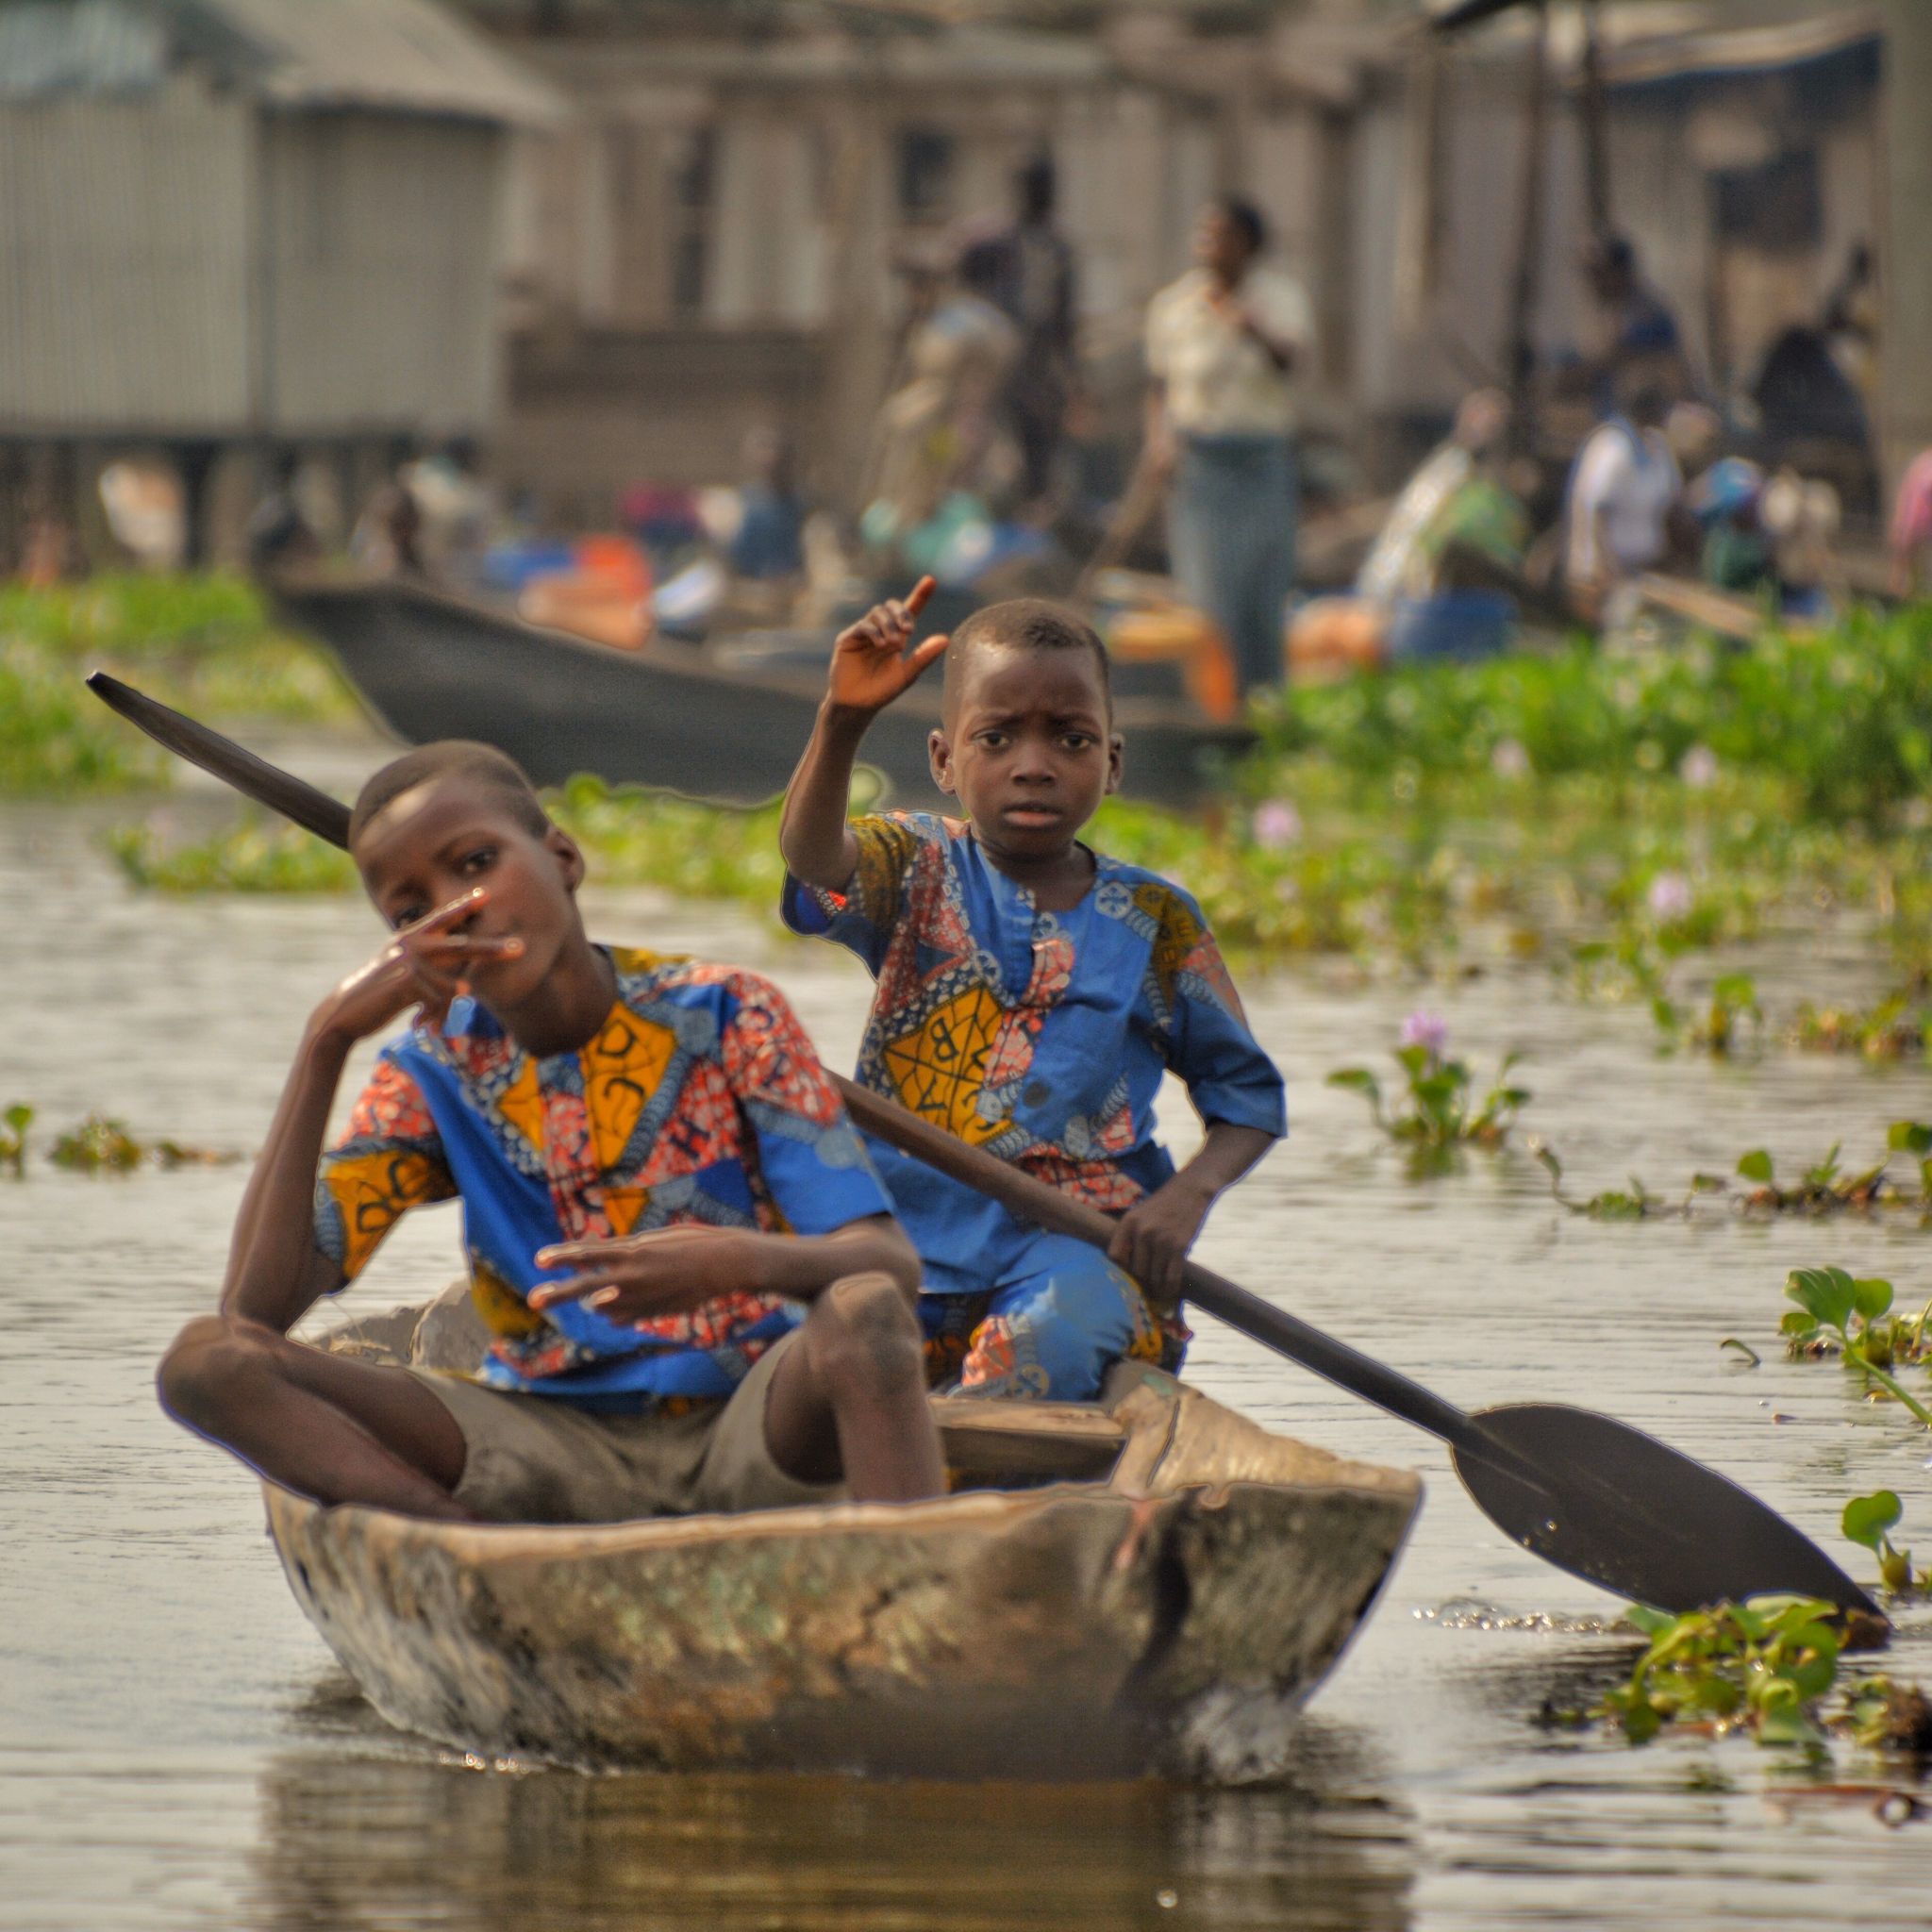 Canoe in Ganvie, Benin